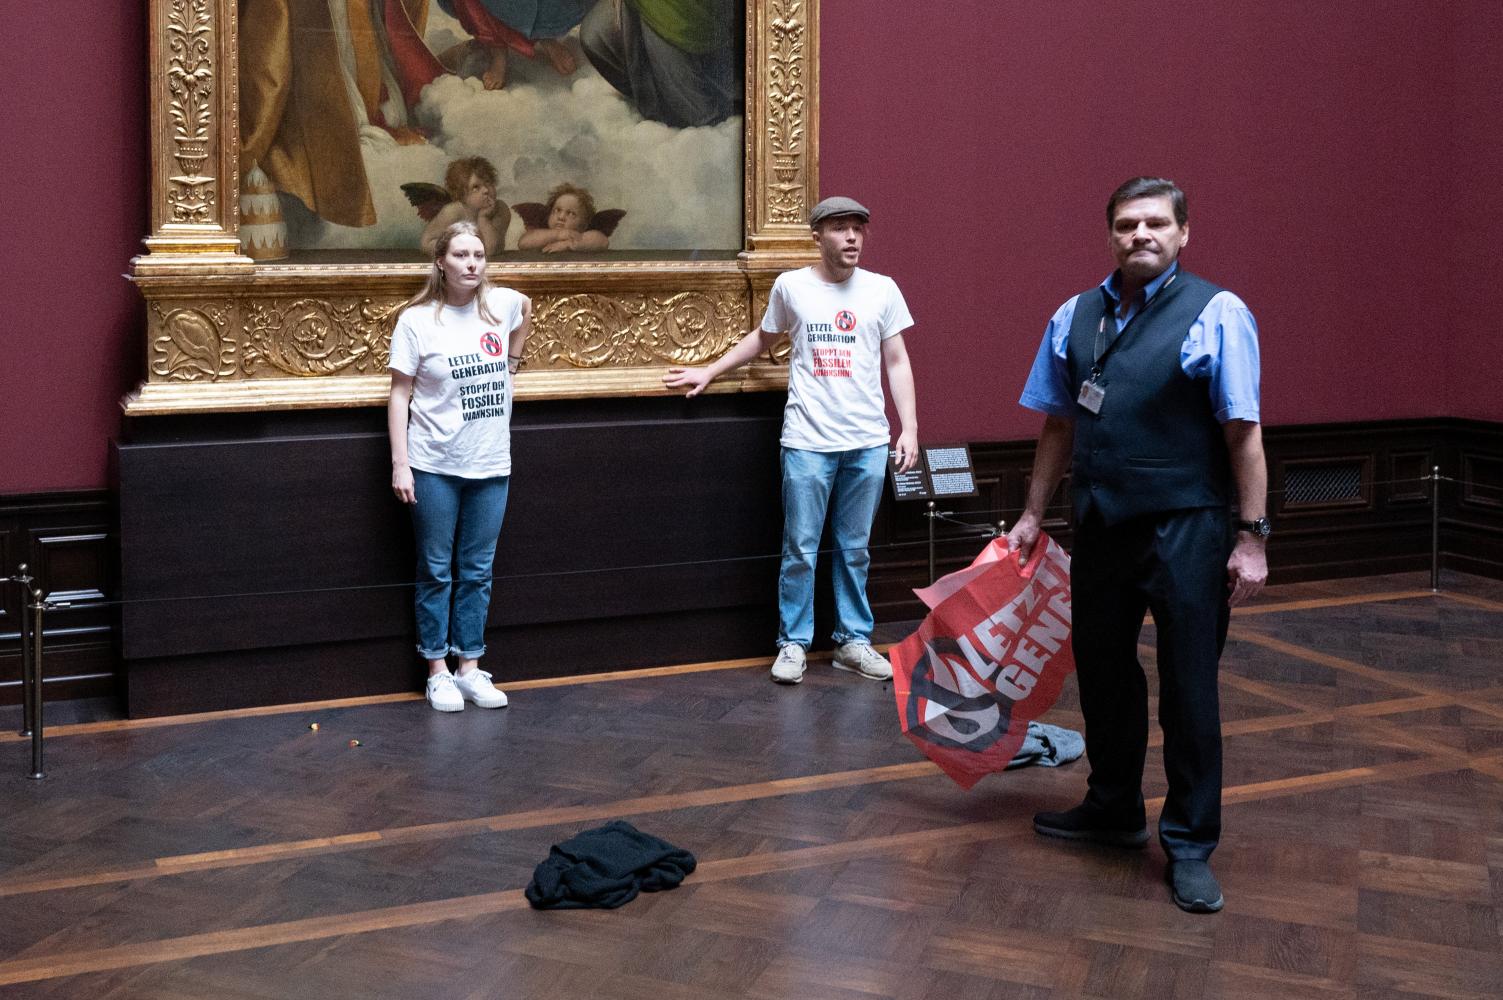 Zwei Umweltaktivisten der Gruppe "Letzte Generation" stehen in der Gemäldegalerie Alte Meister an dem Gemälde "Sixtinische Madonna" von Raffael. Die Klebe-Attacke verursachte Schäden in fünfstelliger Höhe